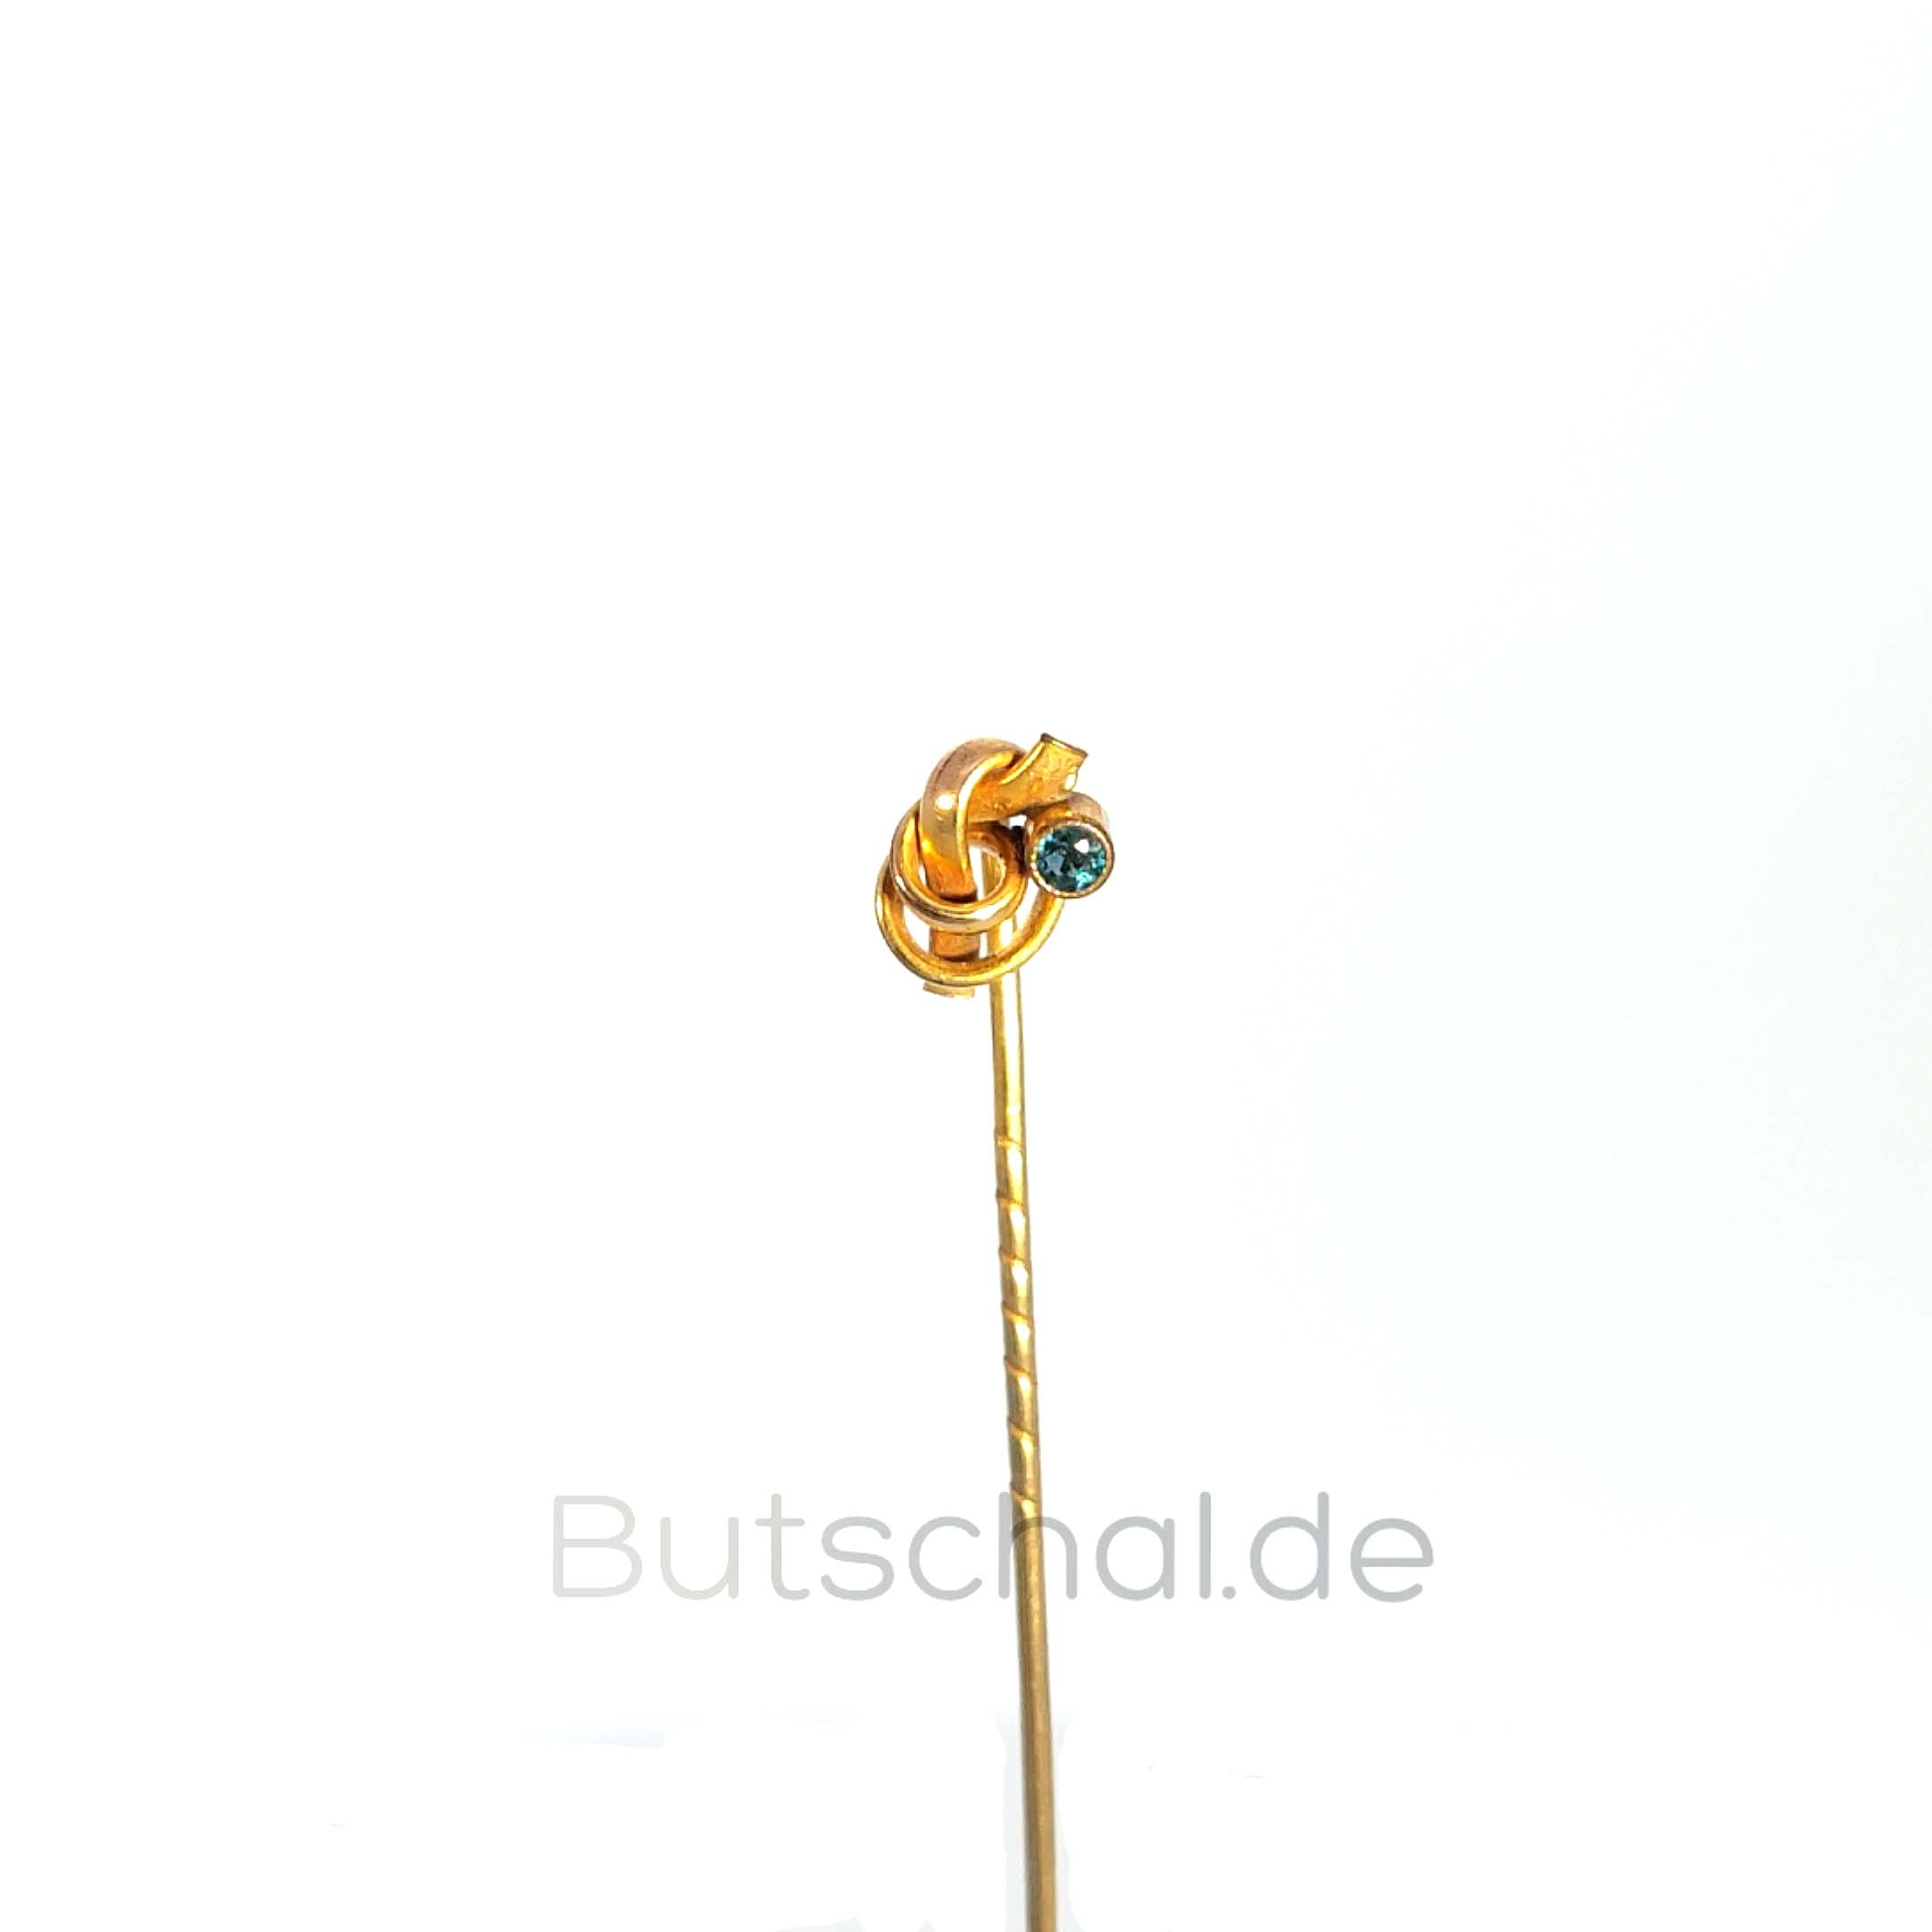  Krawattennadel - Goldene Schleife mit Safir